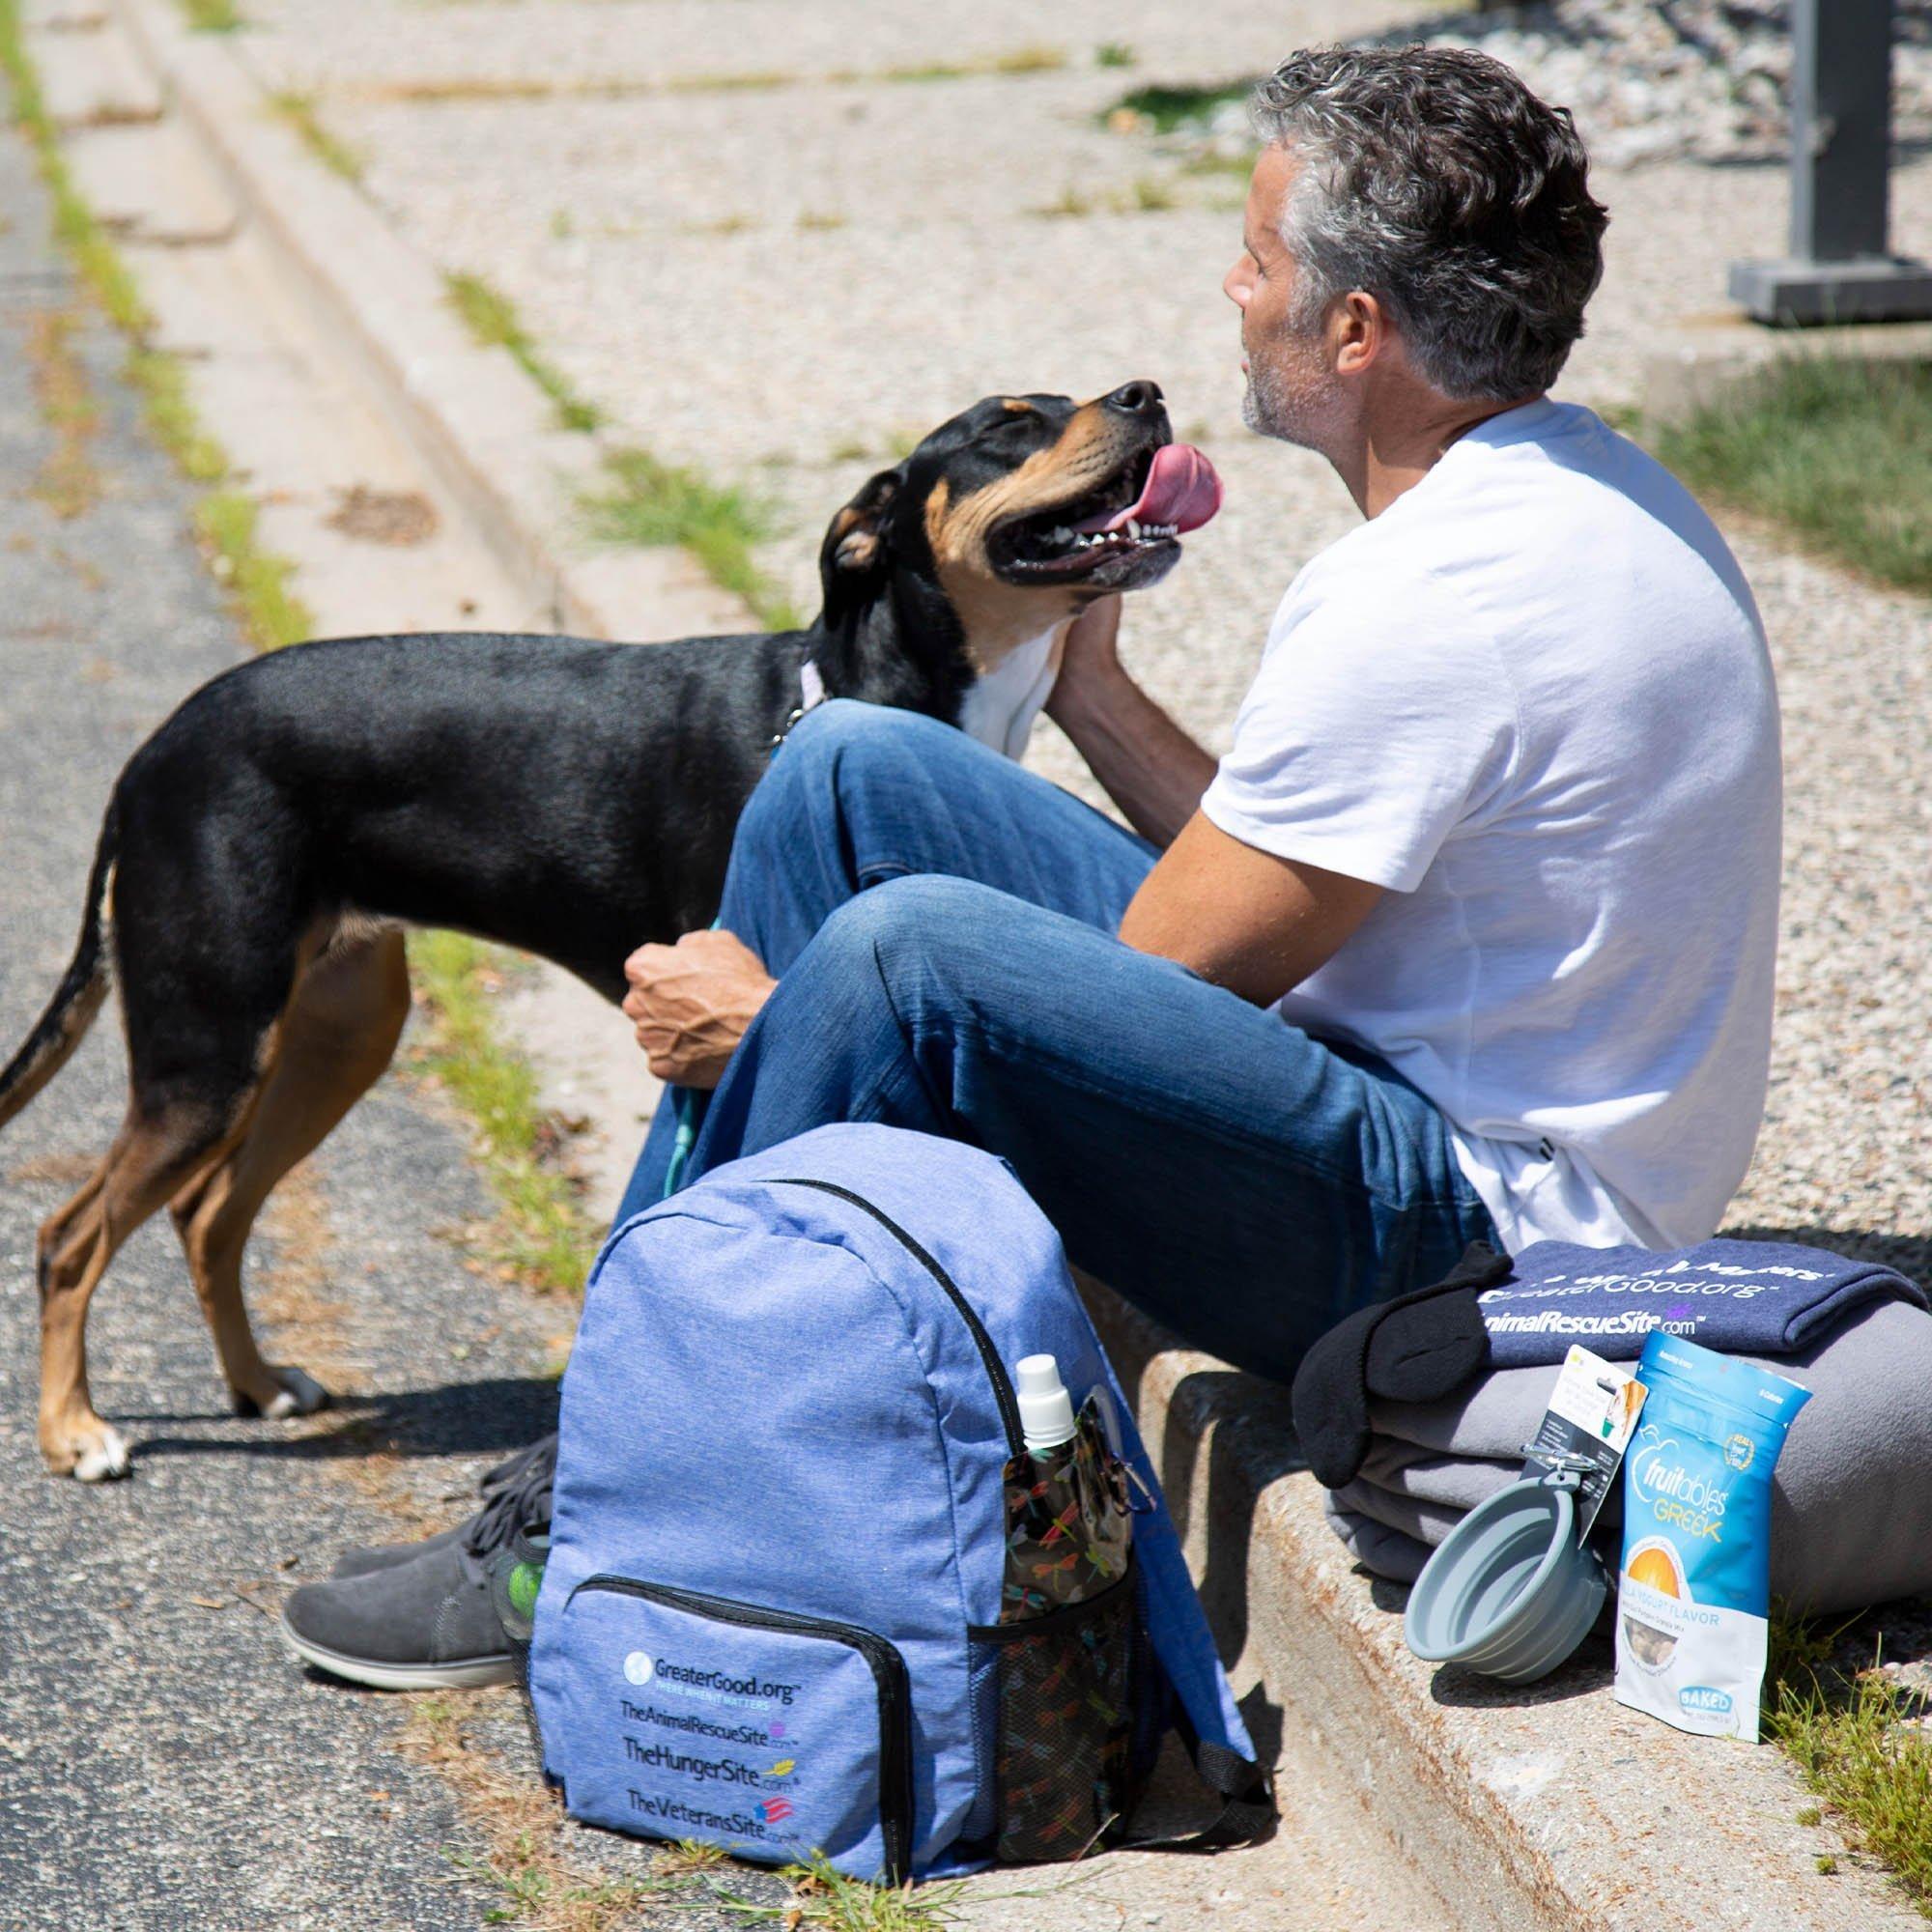 Care Packs For Homeless Dogs \u0026 Vets 